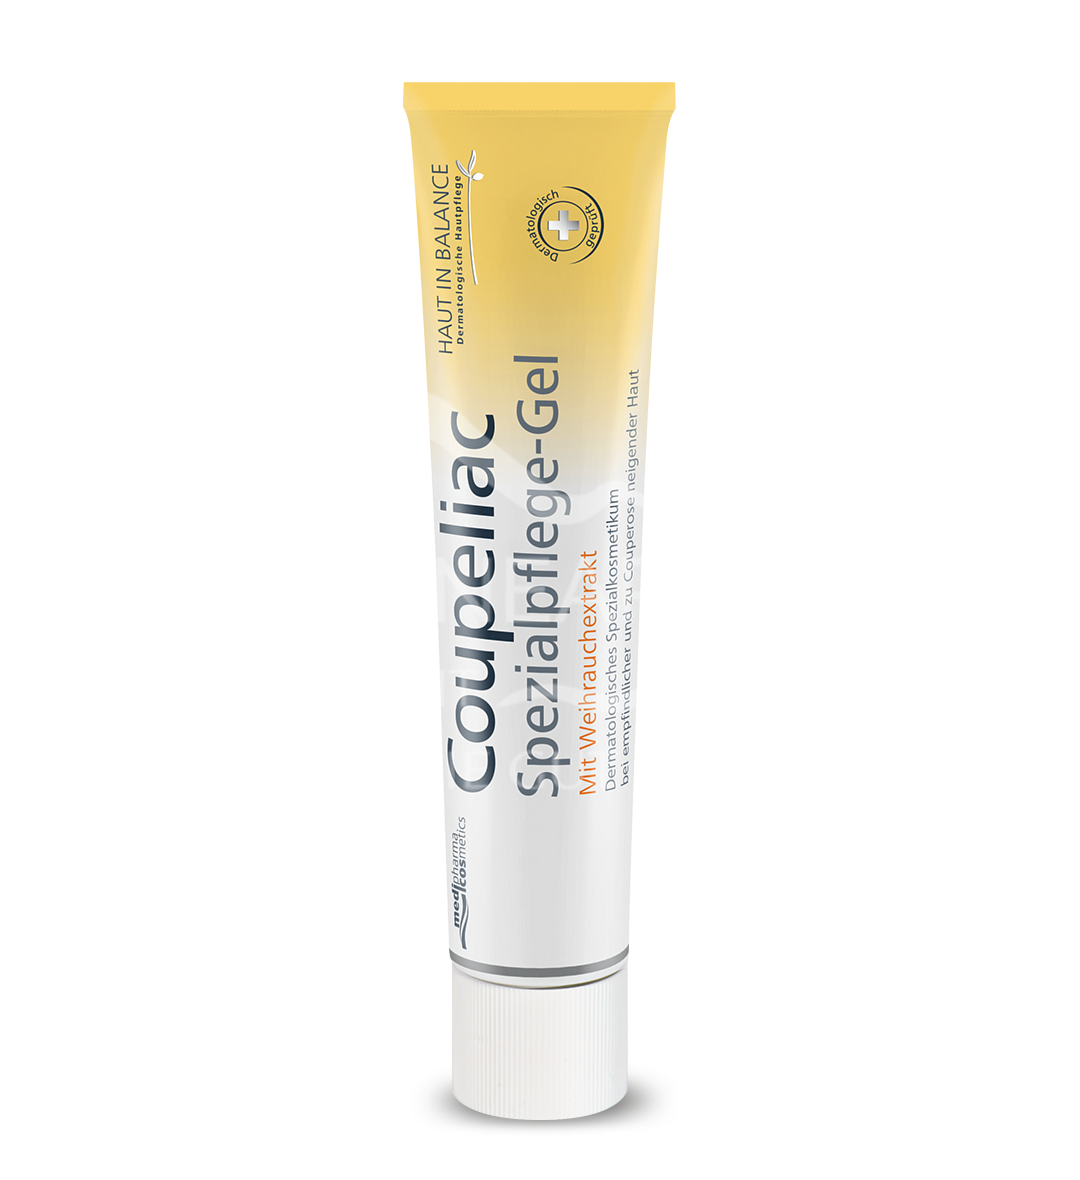 medipharma cosmetics Haut in Balance Coupeliac Spezialpflege-Gel